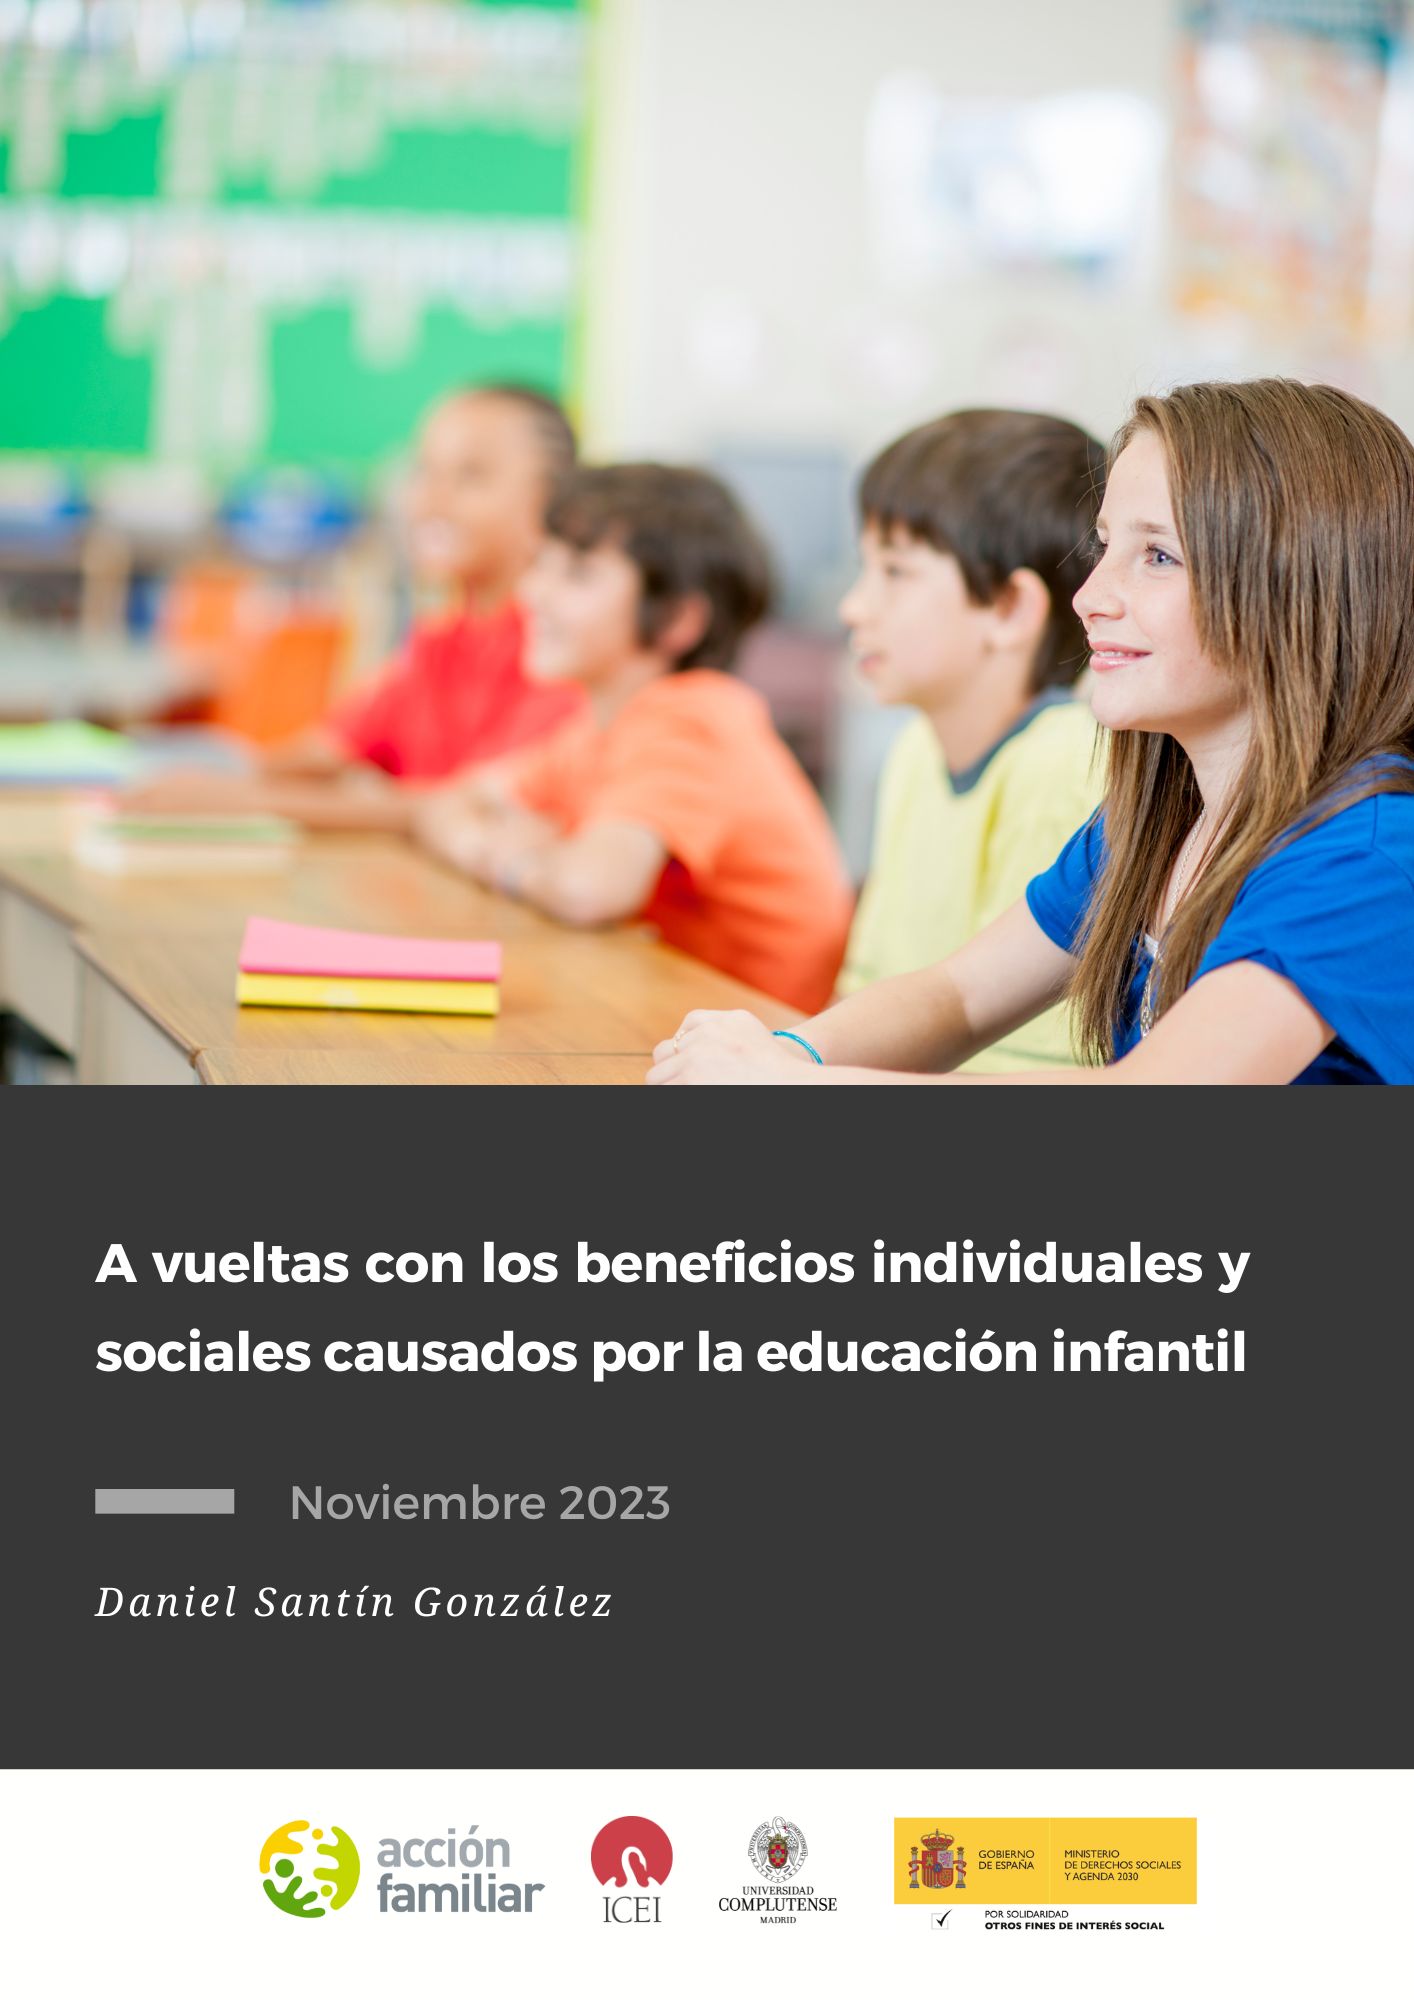 A vueltas con los beneficios individuales y sociales causados por la educación infantil